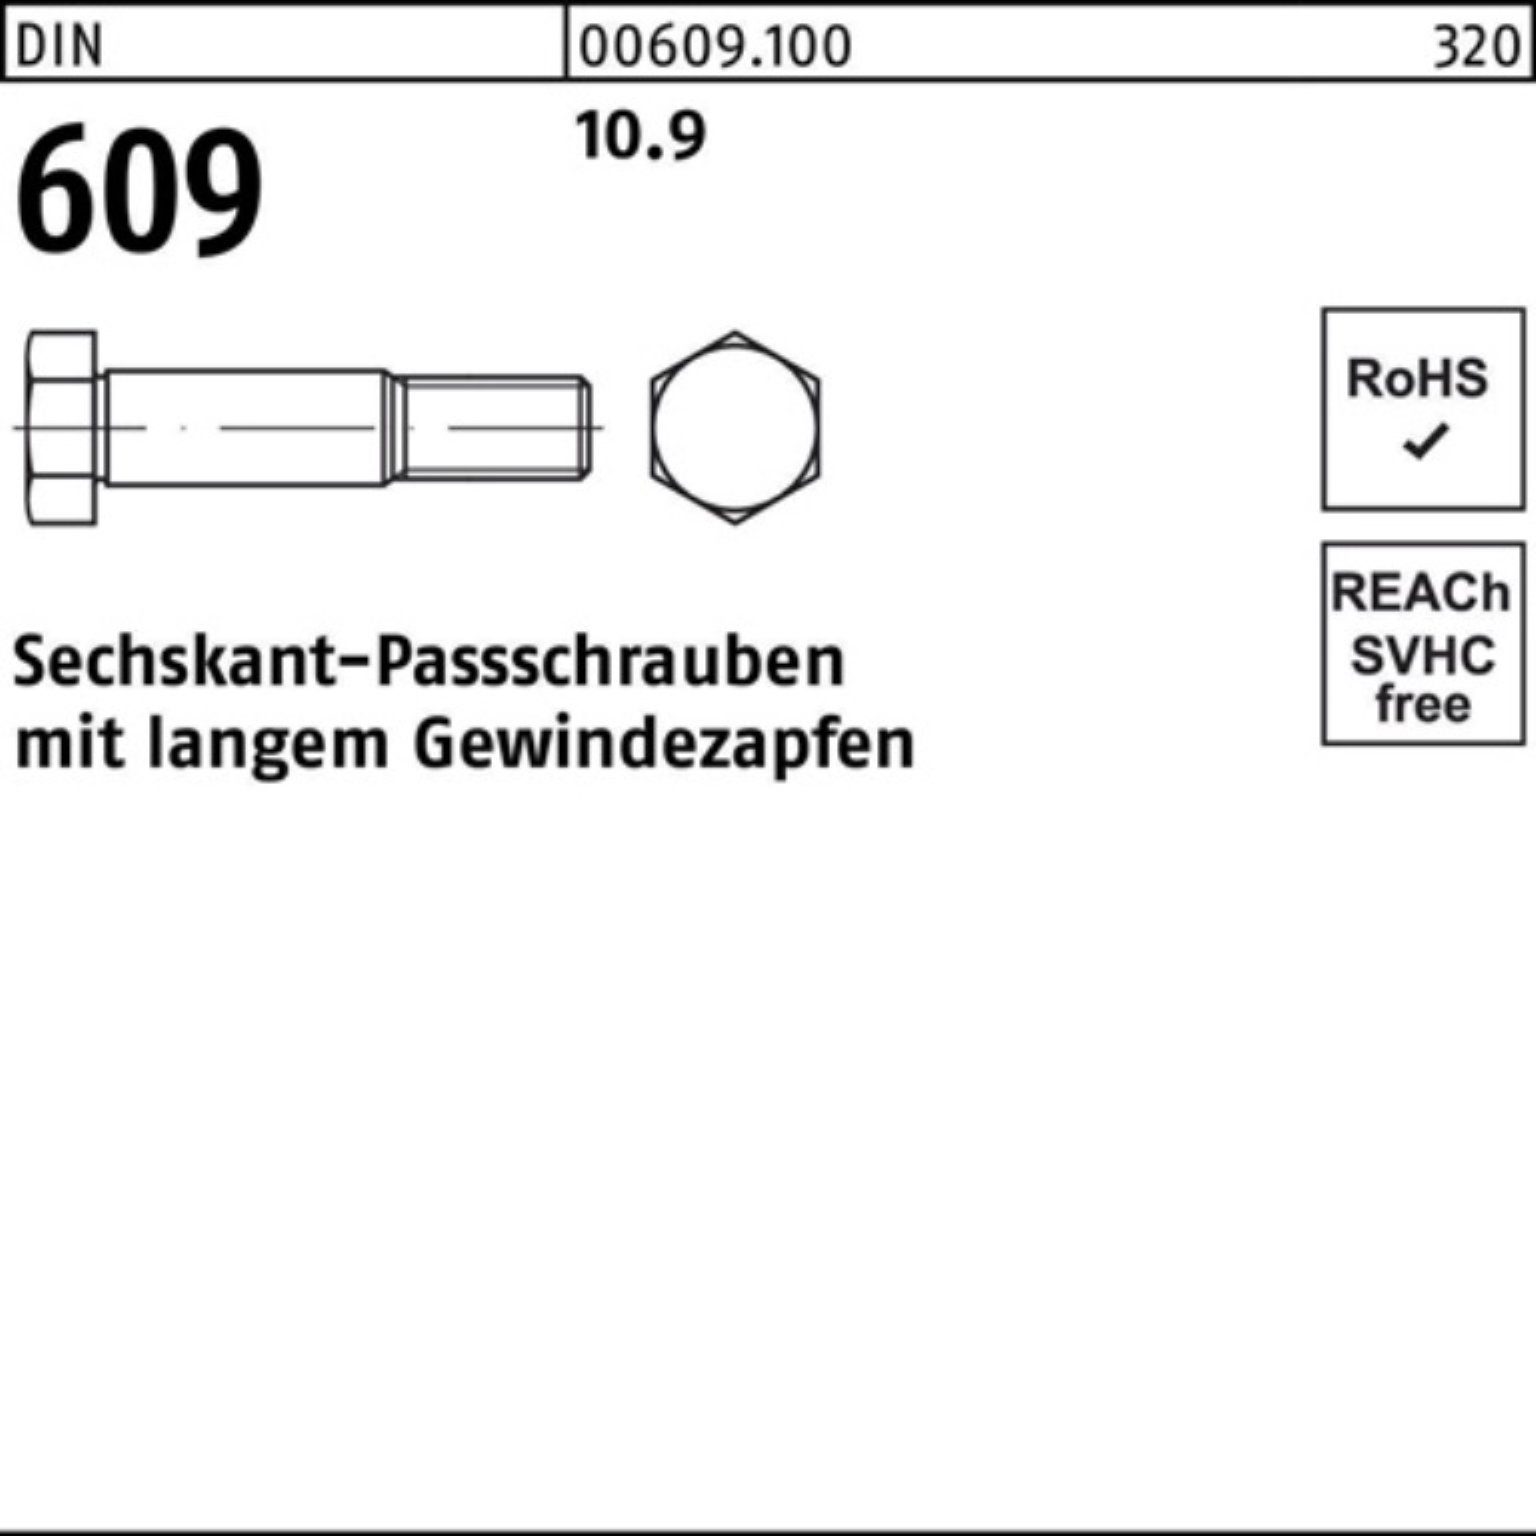 Sechskantpassschraube Schraube 100er Pack 70 609 Gewindezapfen langem M24x DIN Reyher